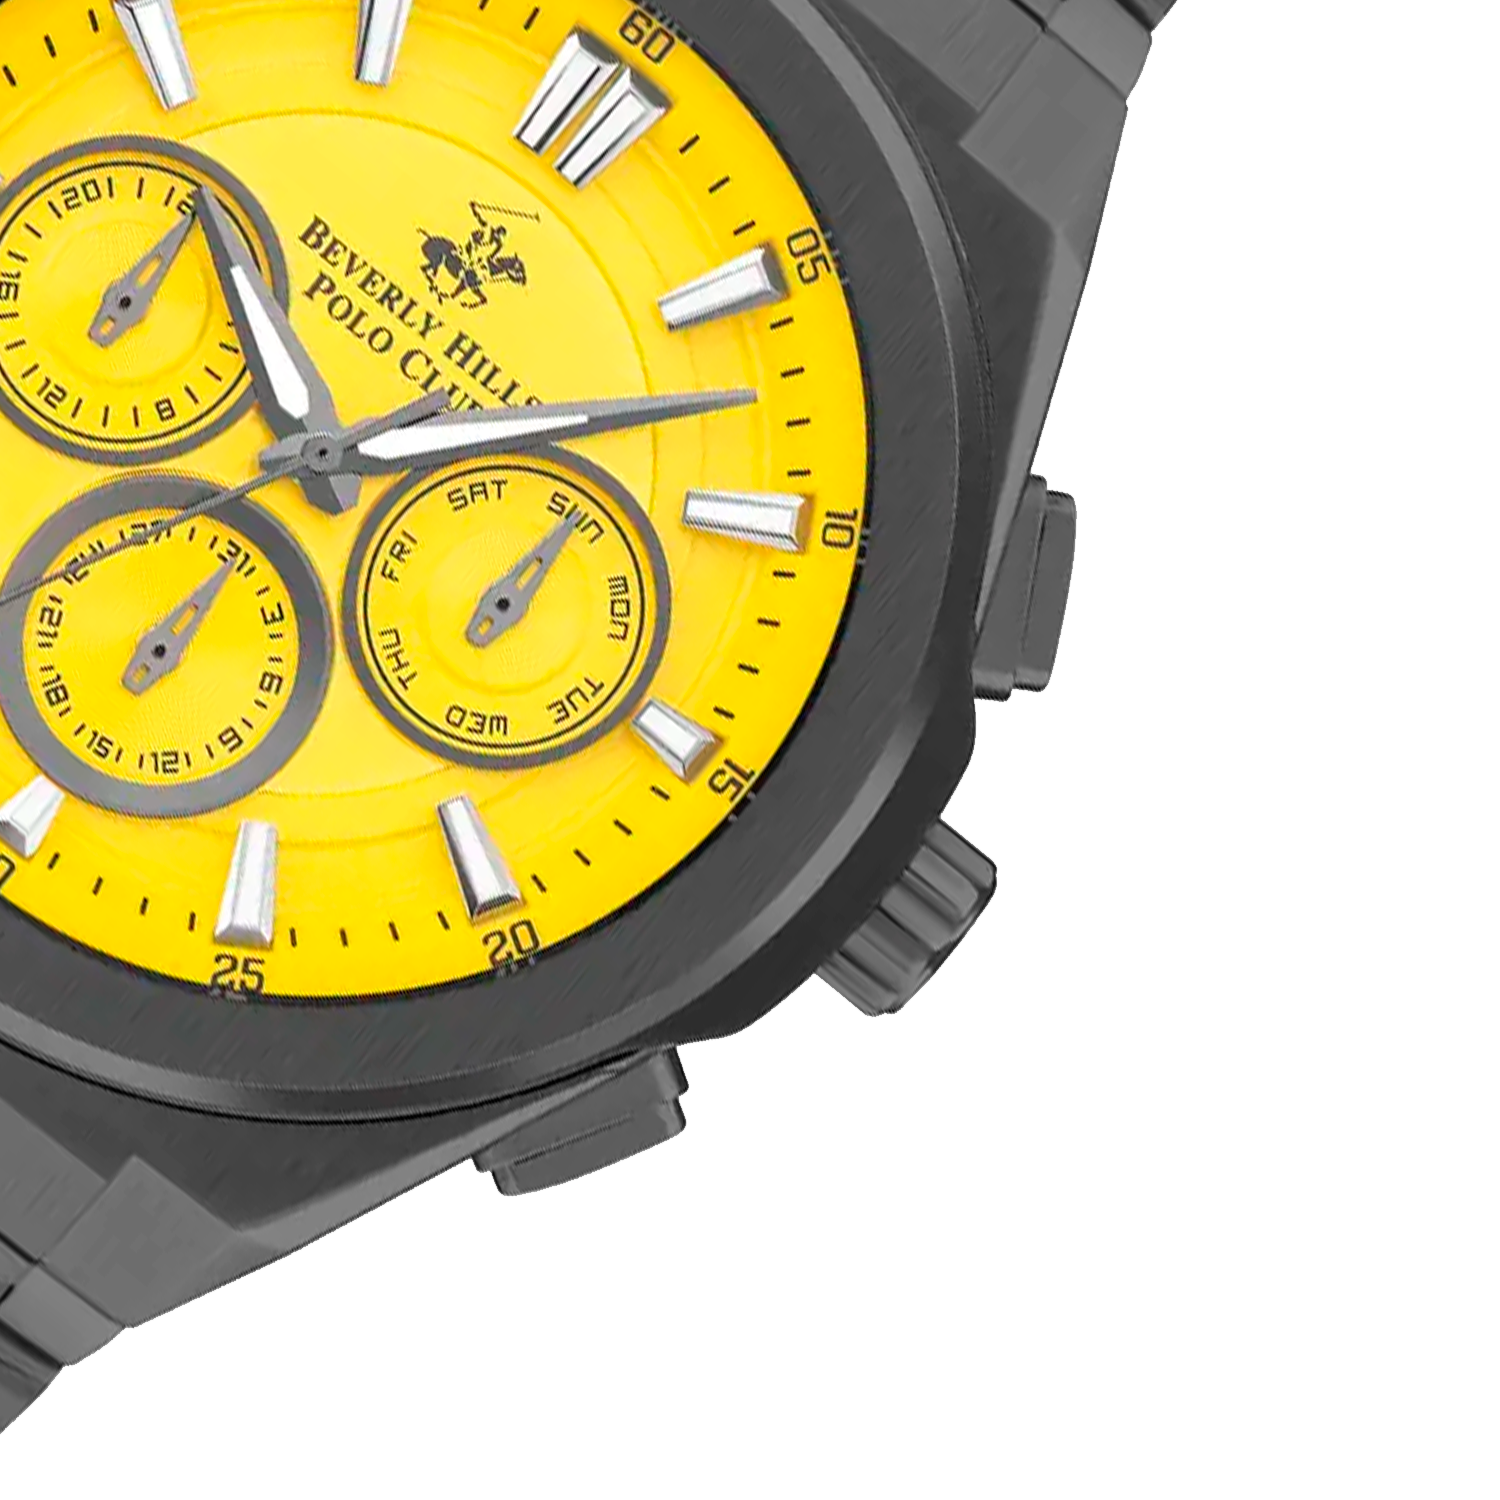 Beverly Hills Watch Company их часы известны во всем мире